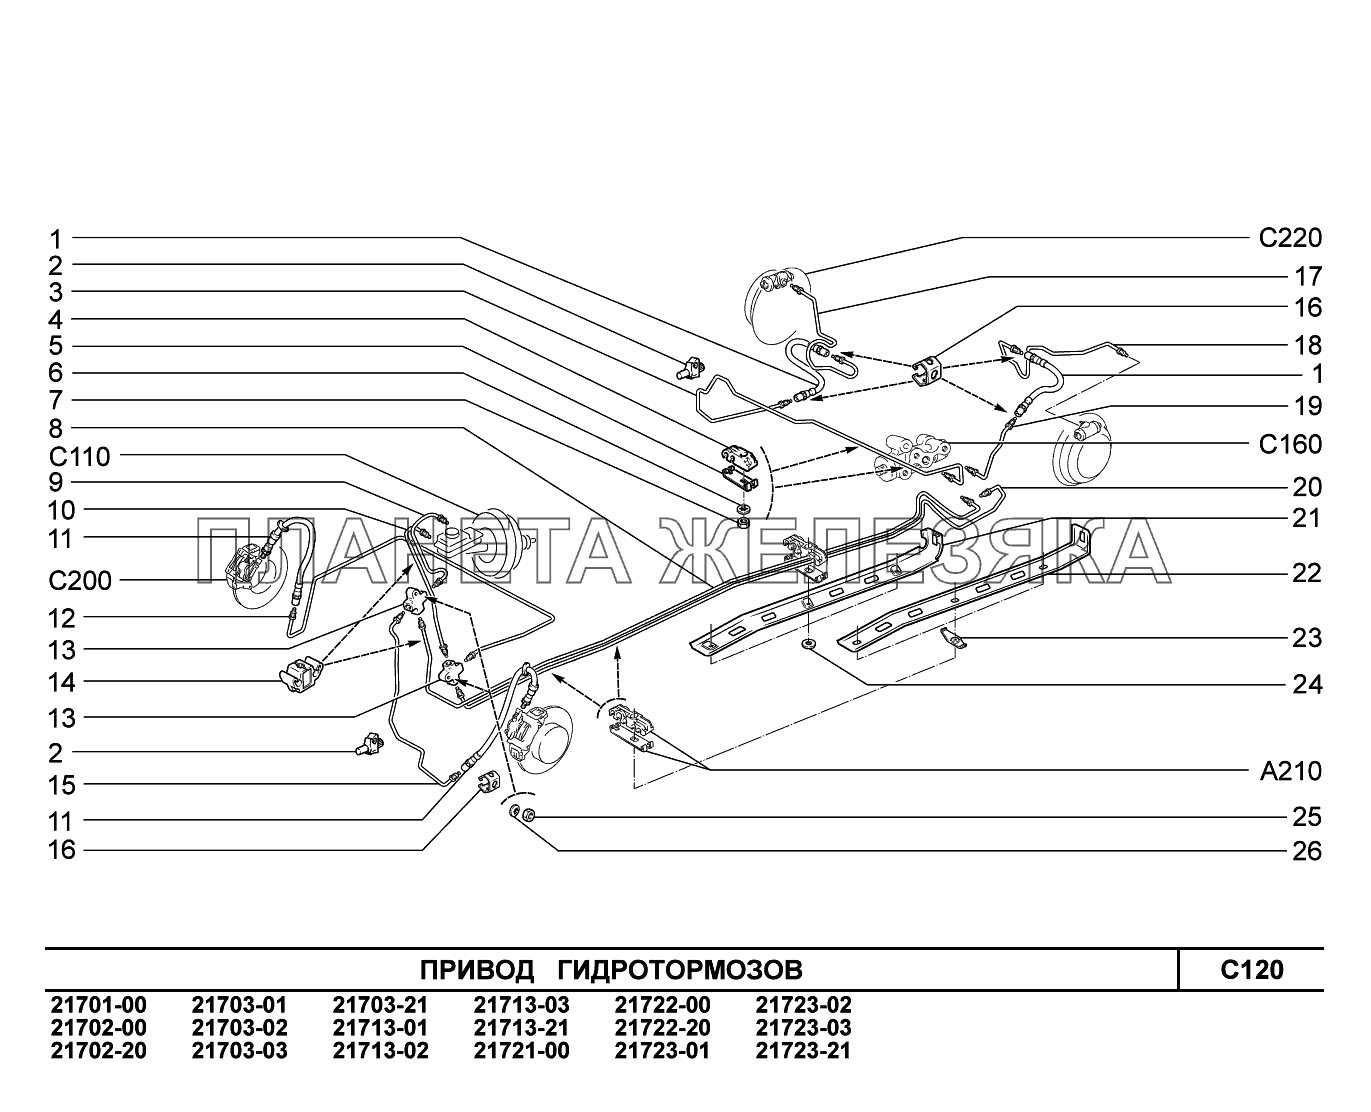 C120. Привод гидротормозов ВАЗ-2170 